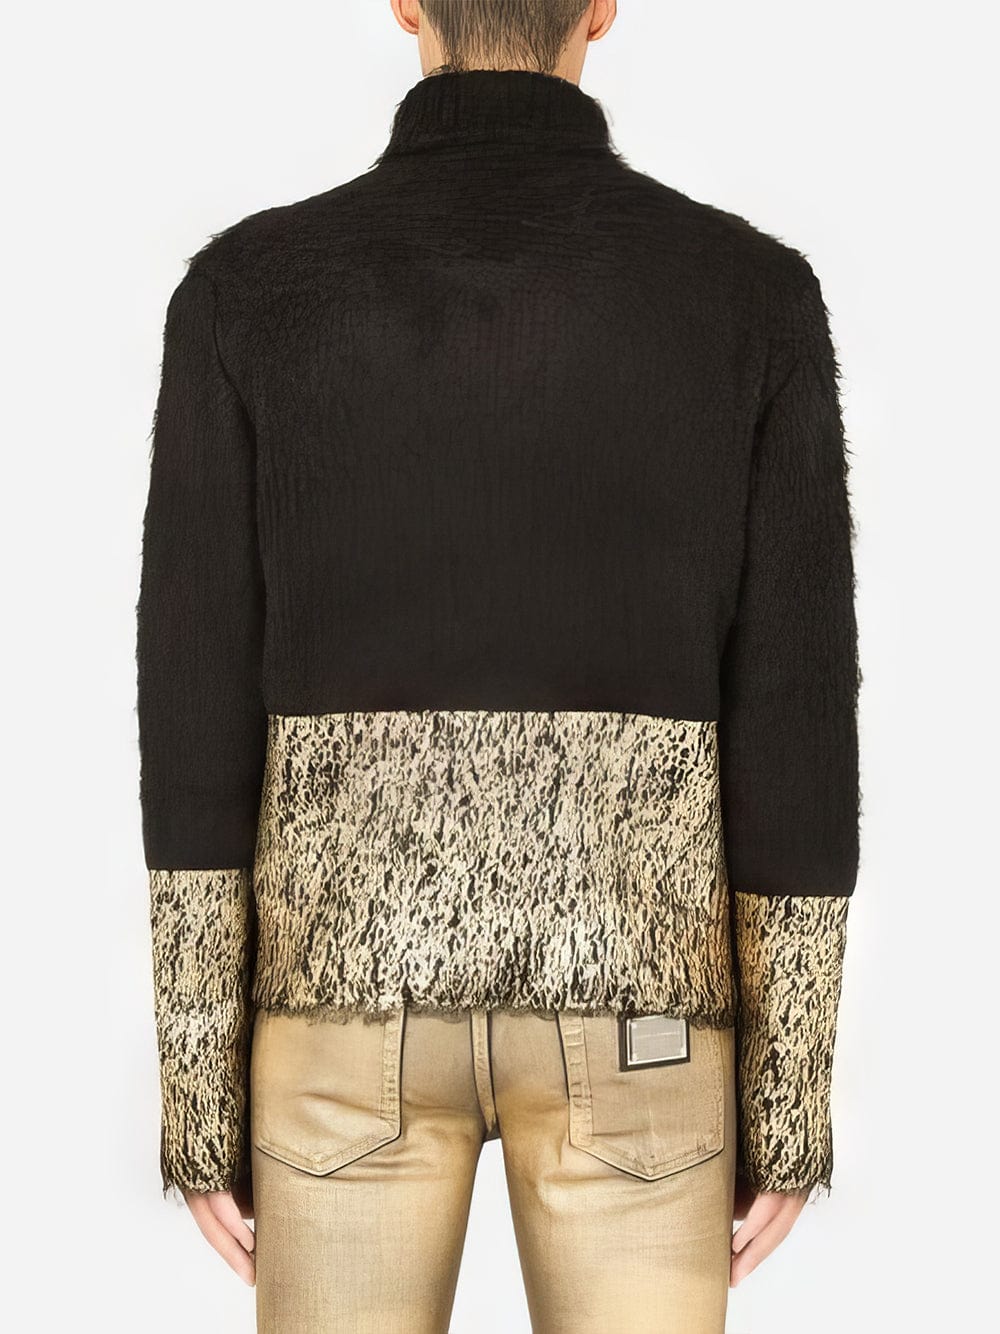 Dolce & Gabbana Mohair Blend Turtleneck Sweater